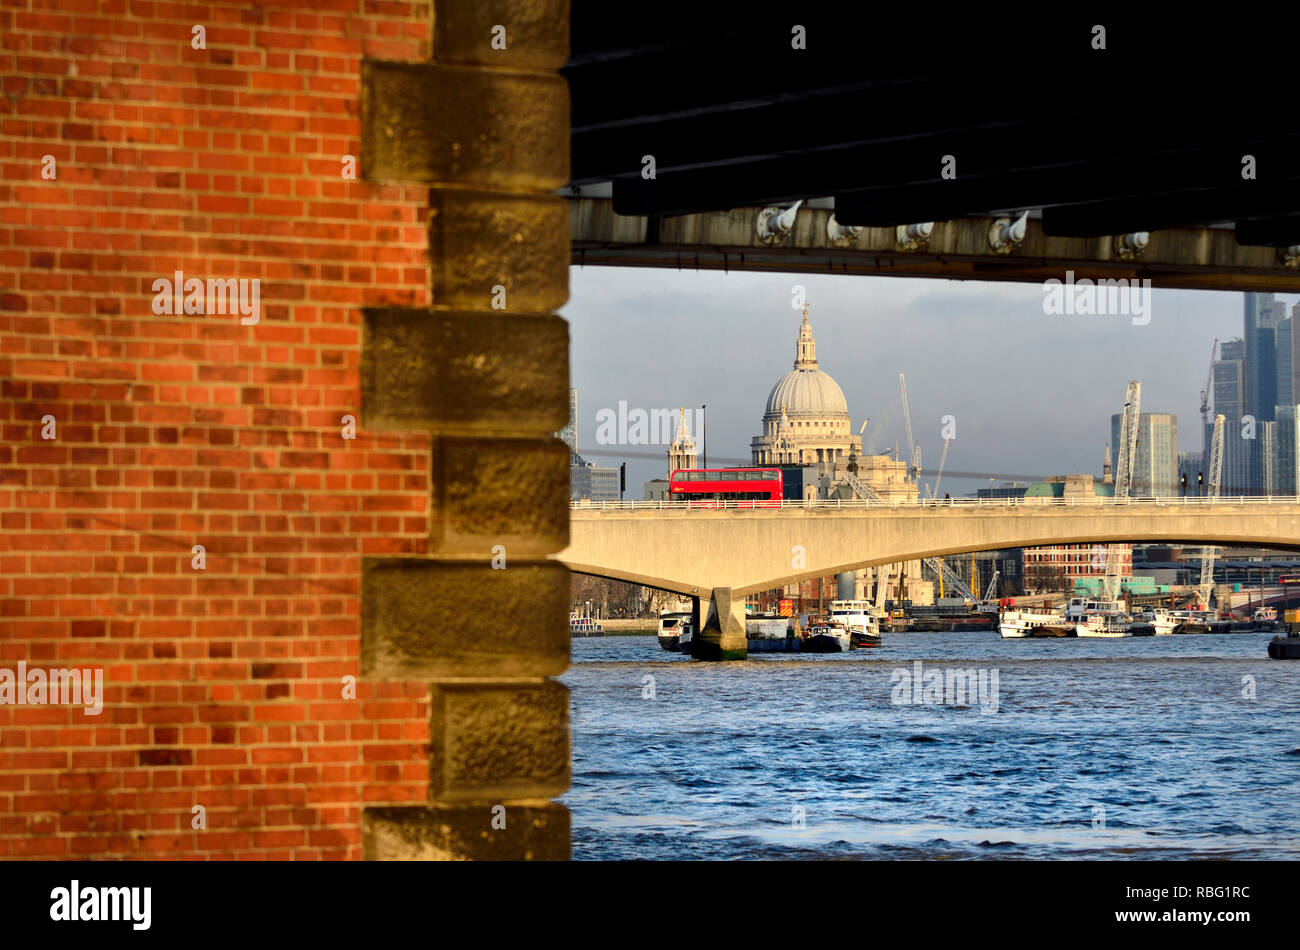 La Cathédrale St Paul, la Tamise et la City de Londres vu sous le Hungerford Bridge, Londres, Angleterre, Royaume-Uni. Banque D'Images